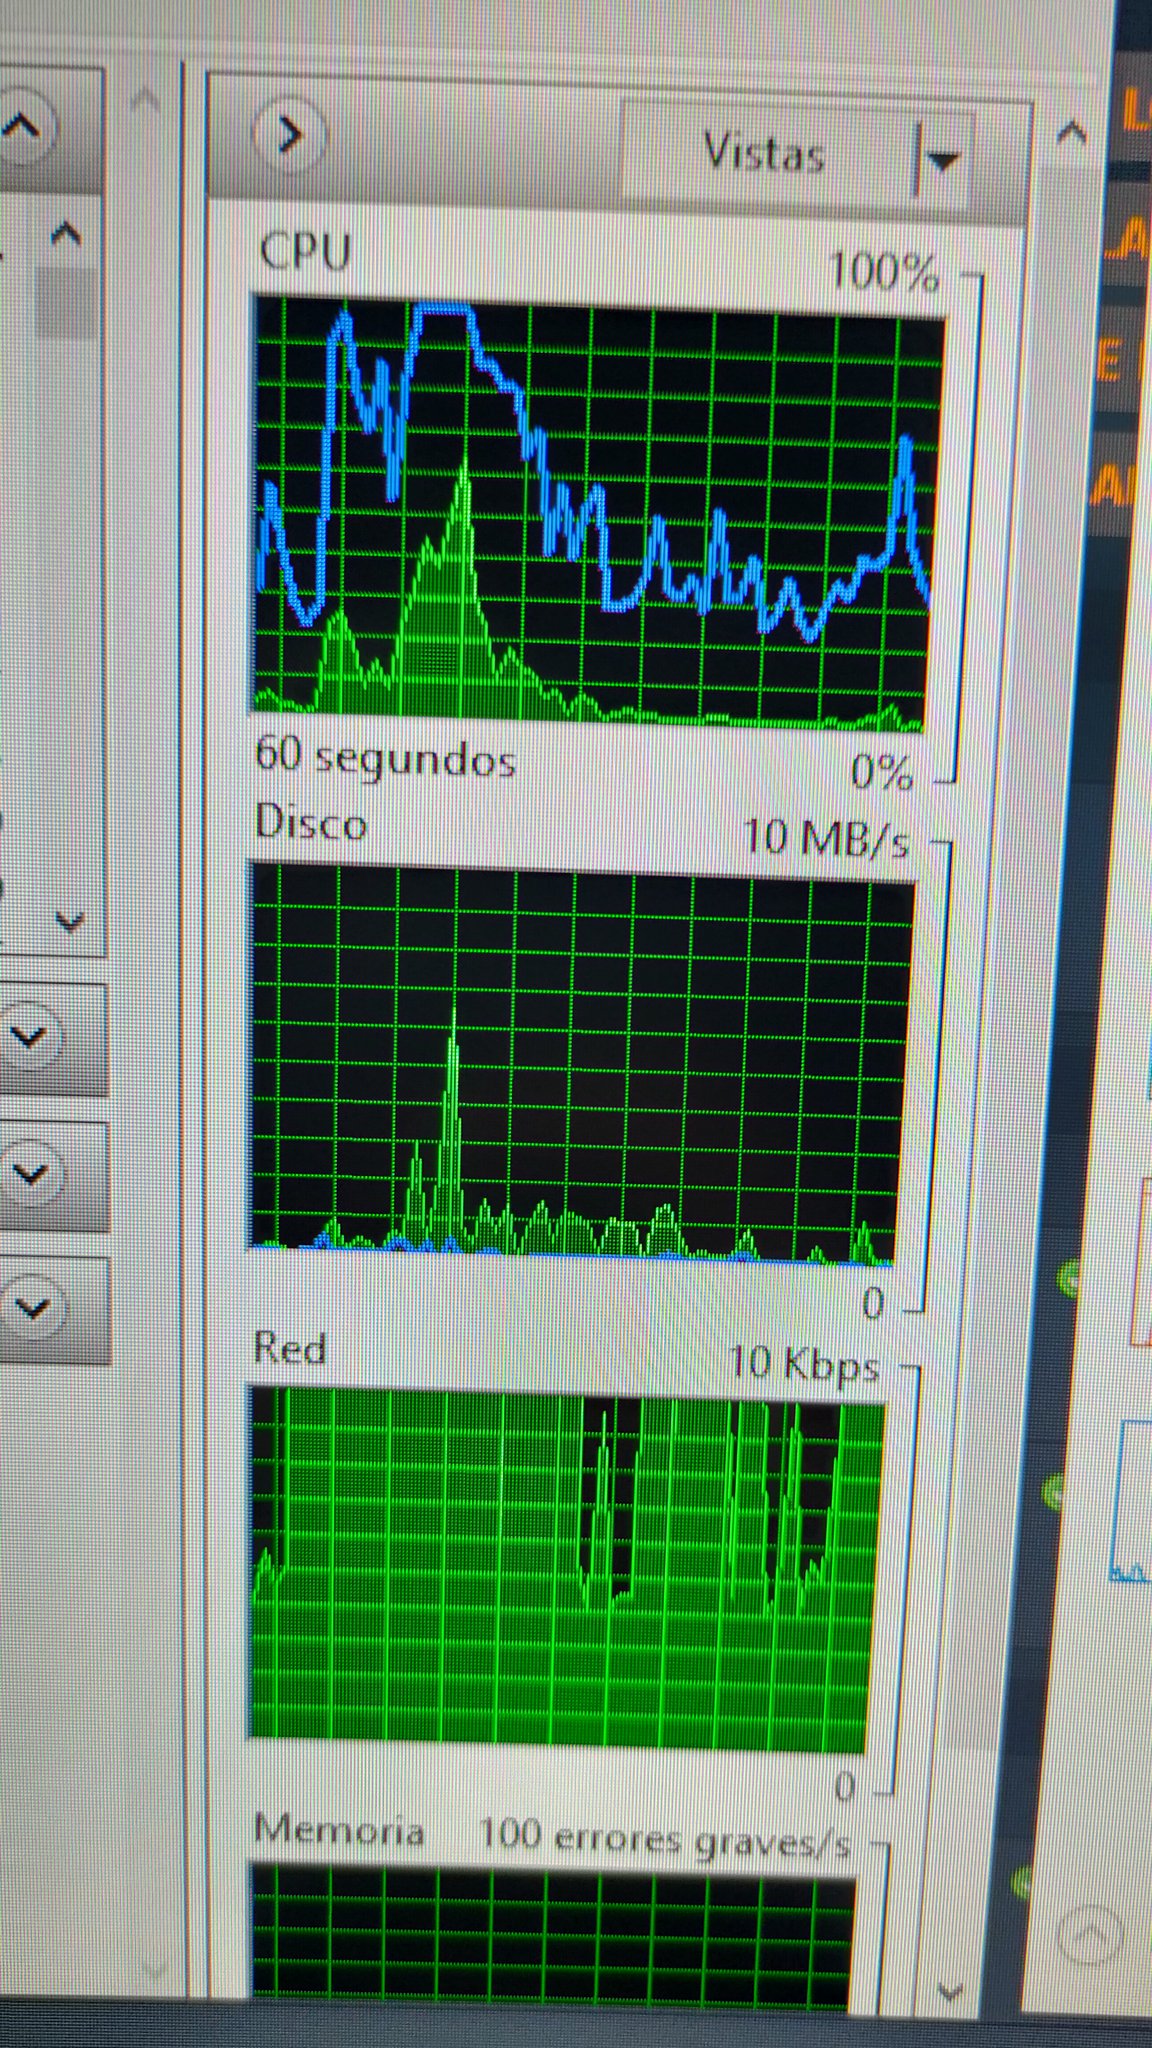 Los ventiladores de mi PC me estan volviendo loco